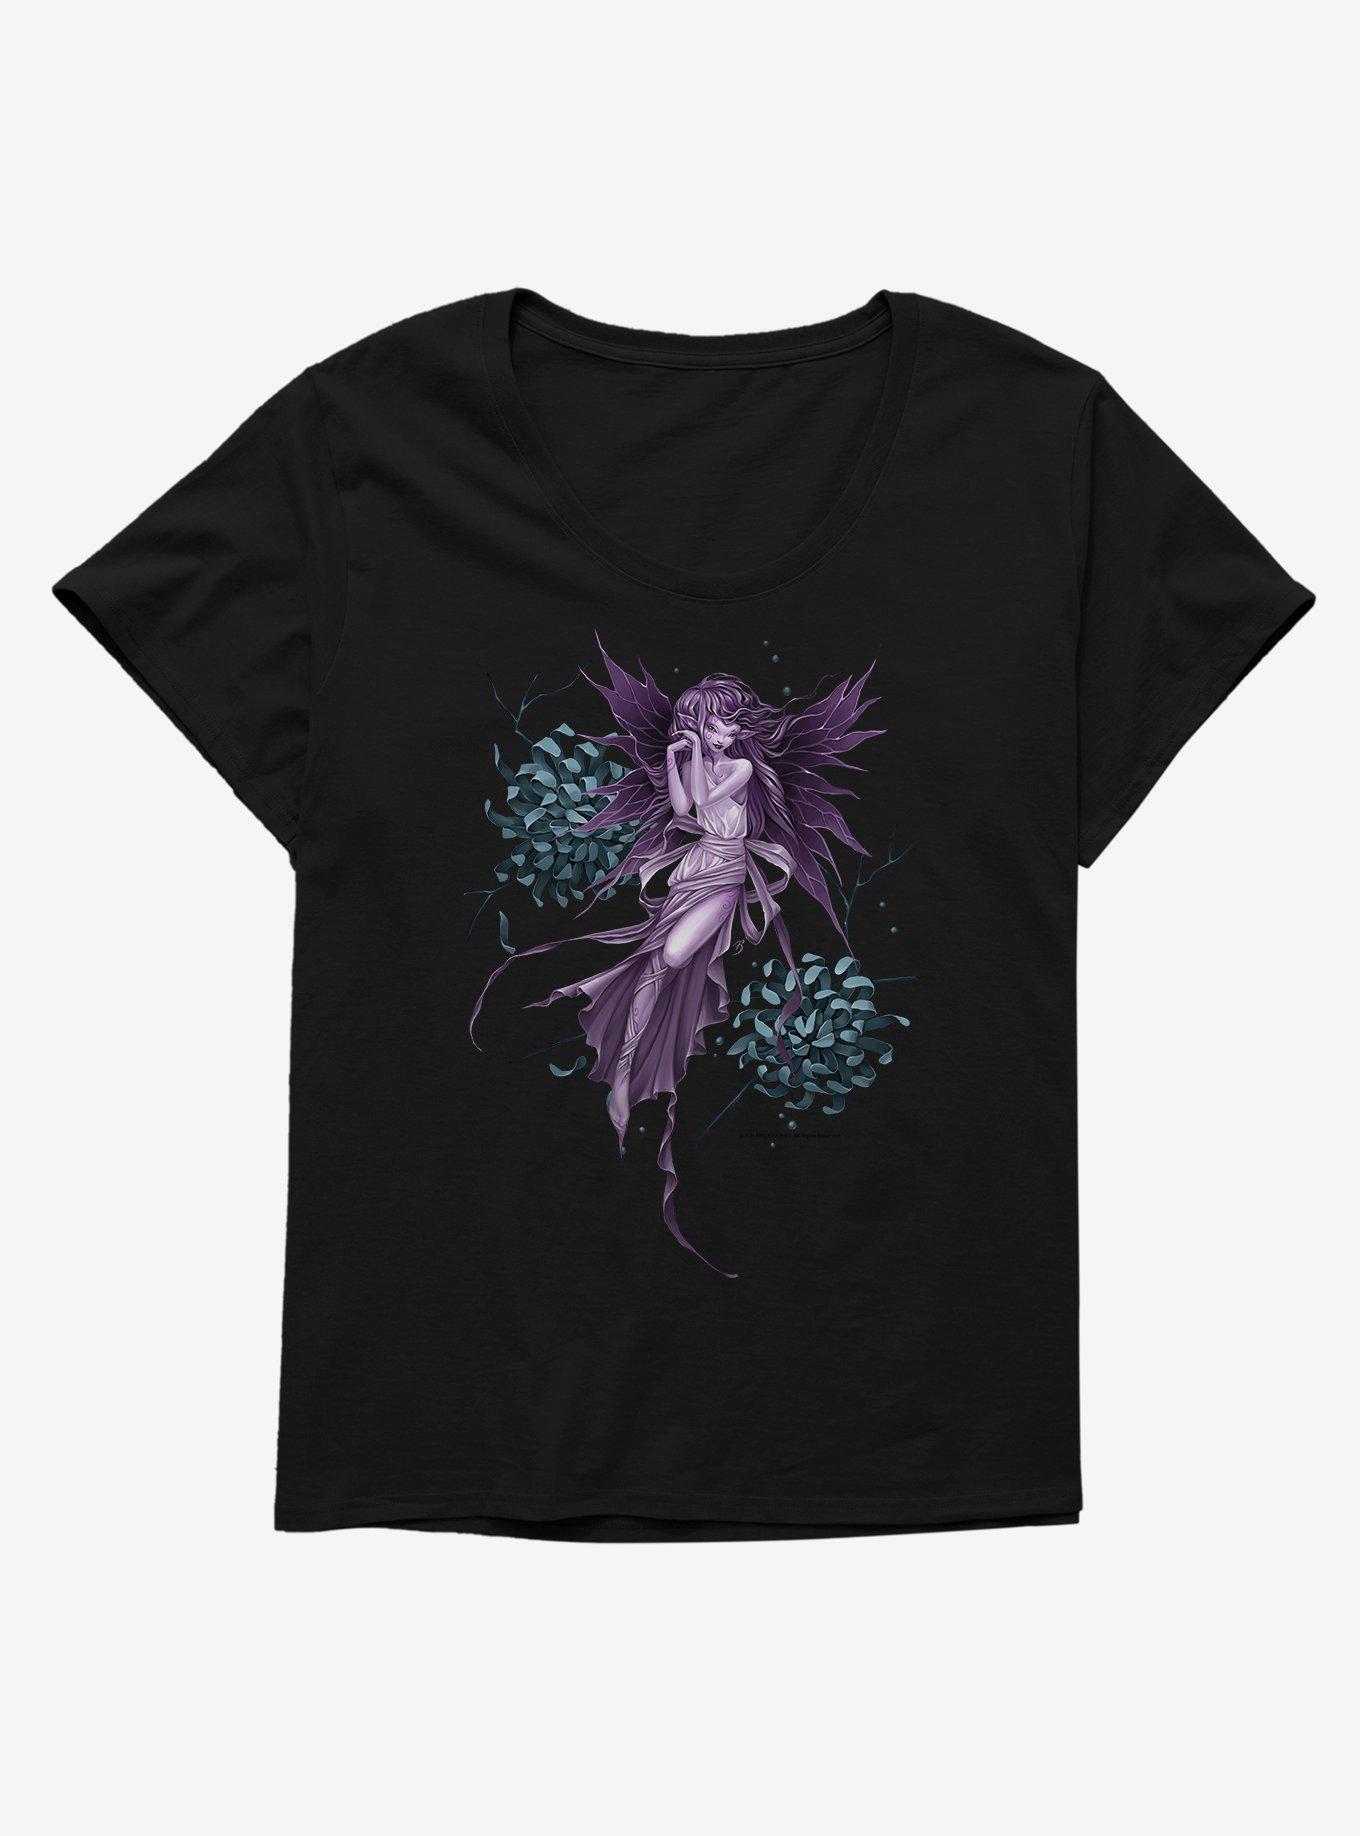 Fairies By Trick Sweet Fairy Girls T-Shirt Plus